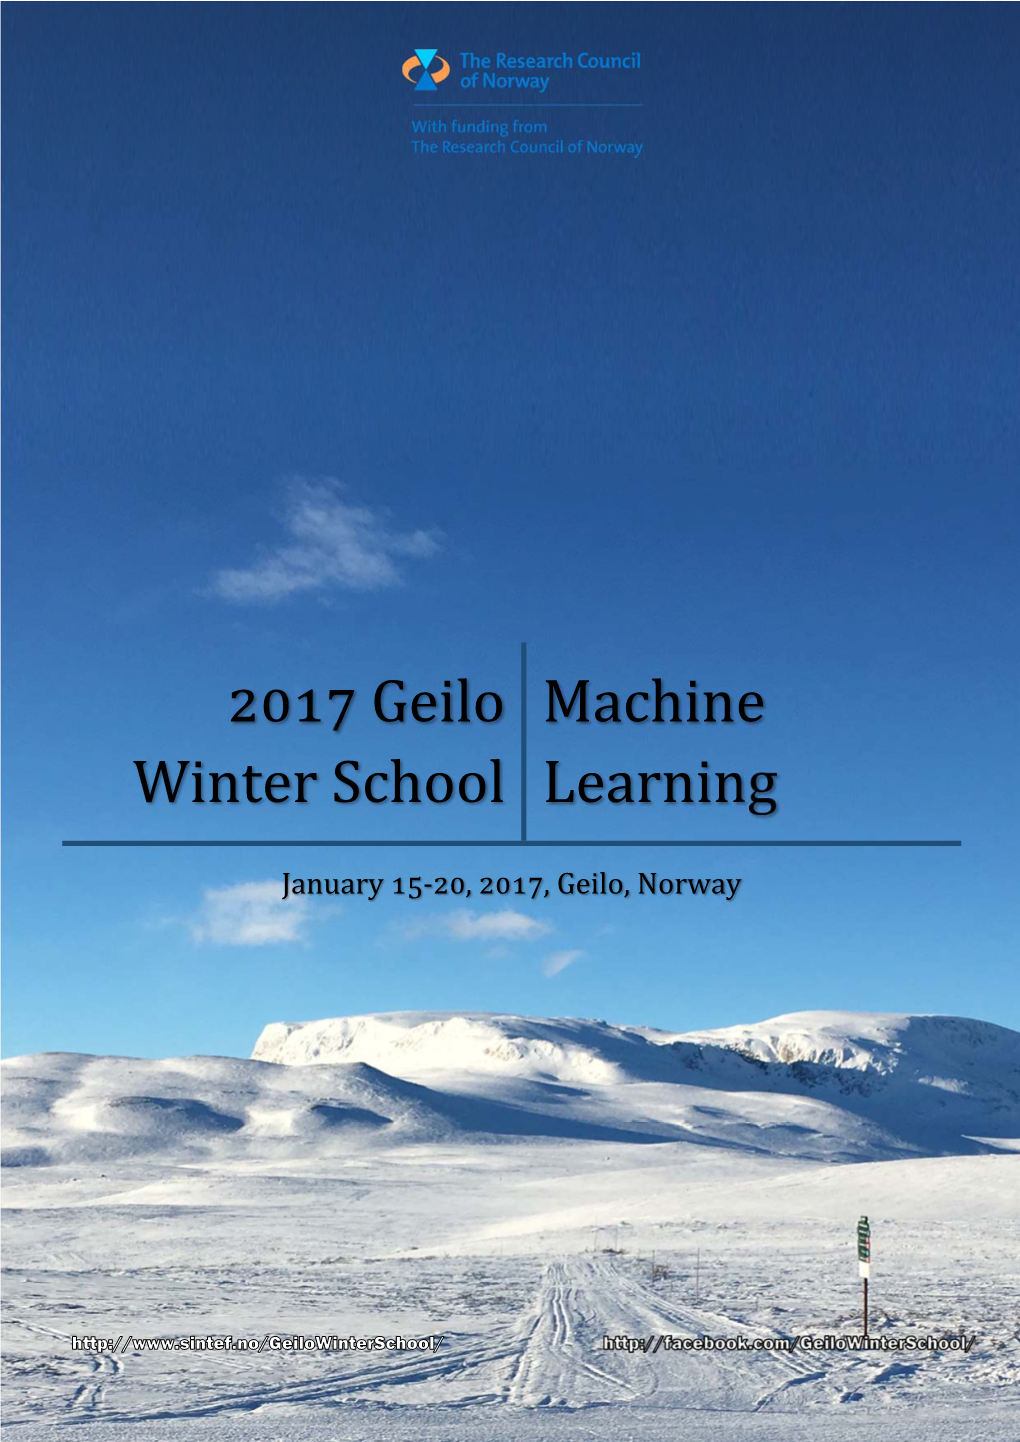 Geilo Winter School Machine Learning